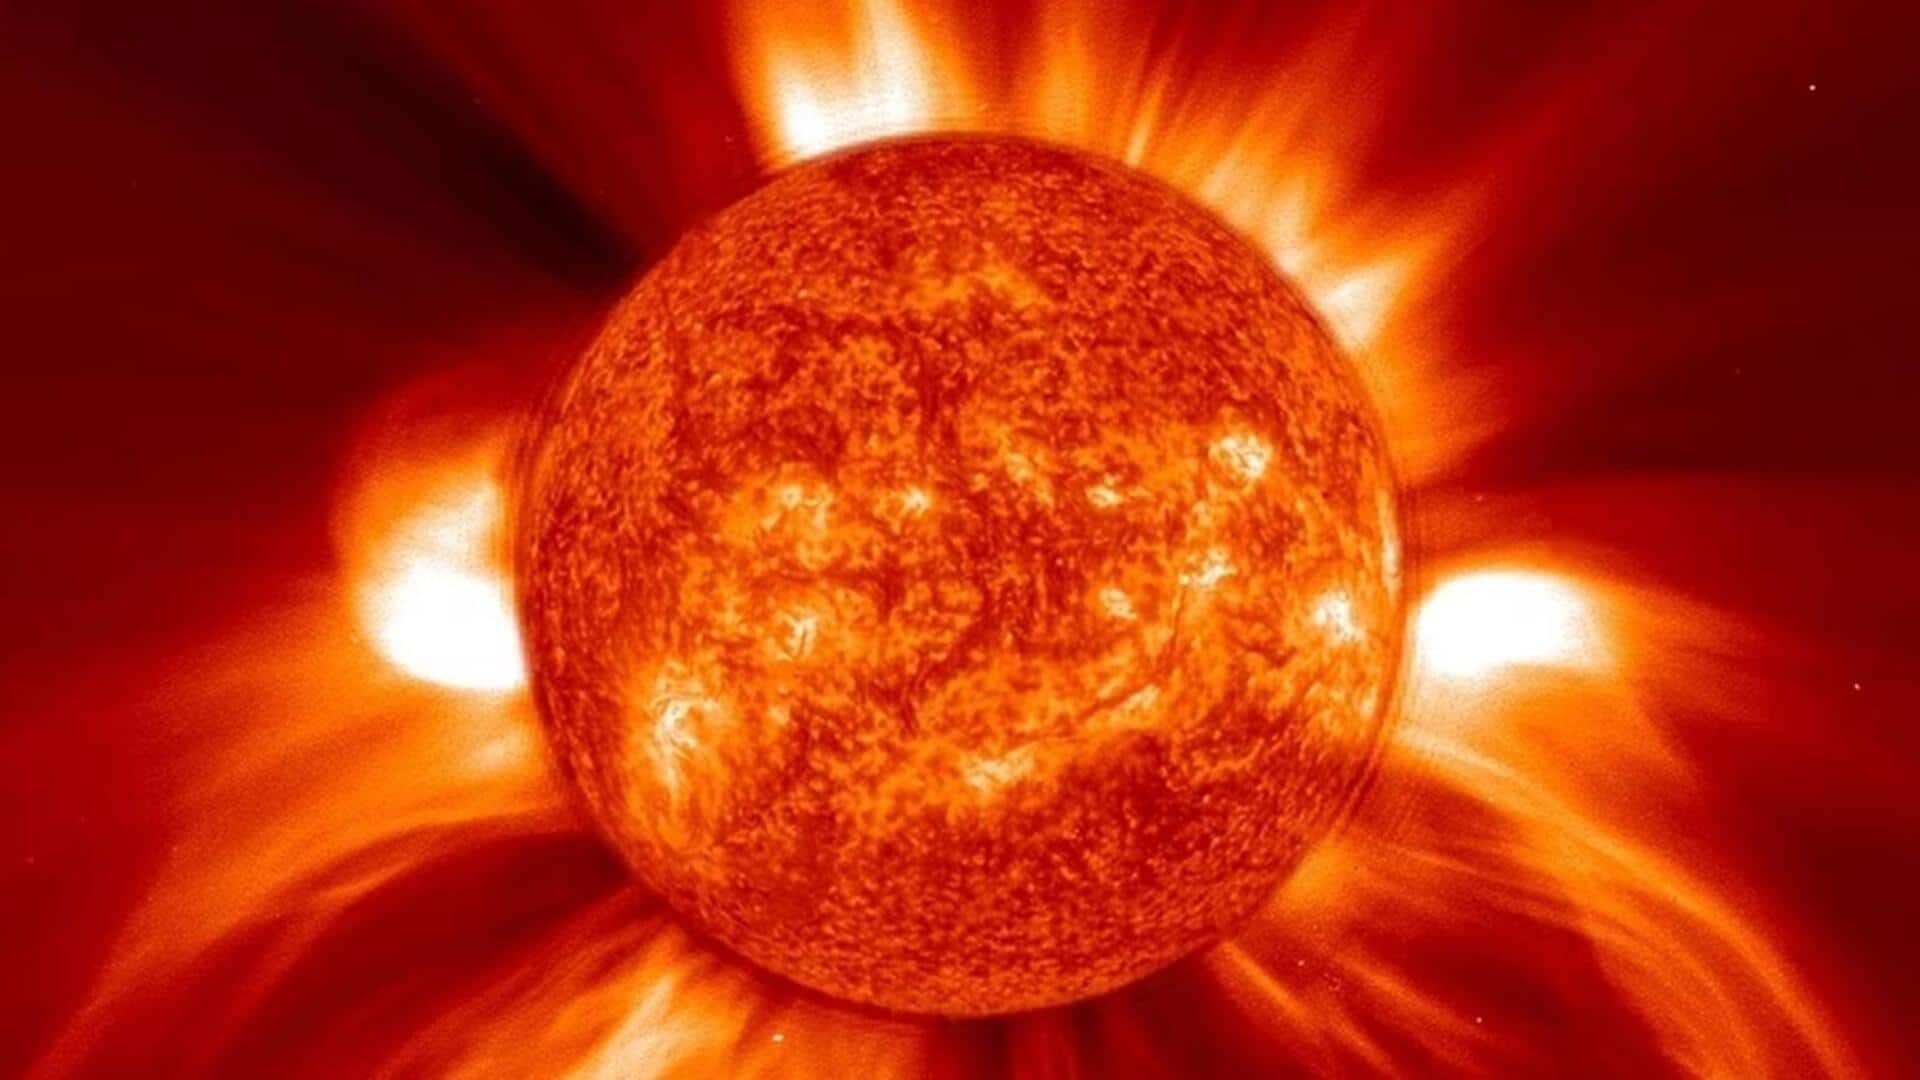 सूर्य पर मौजूद यह सनस्पॉट पृथ्वी के आकार से चार गुना बड़ा हुआ, क्या है खतरा?